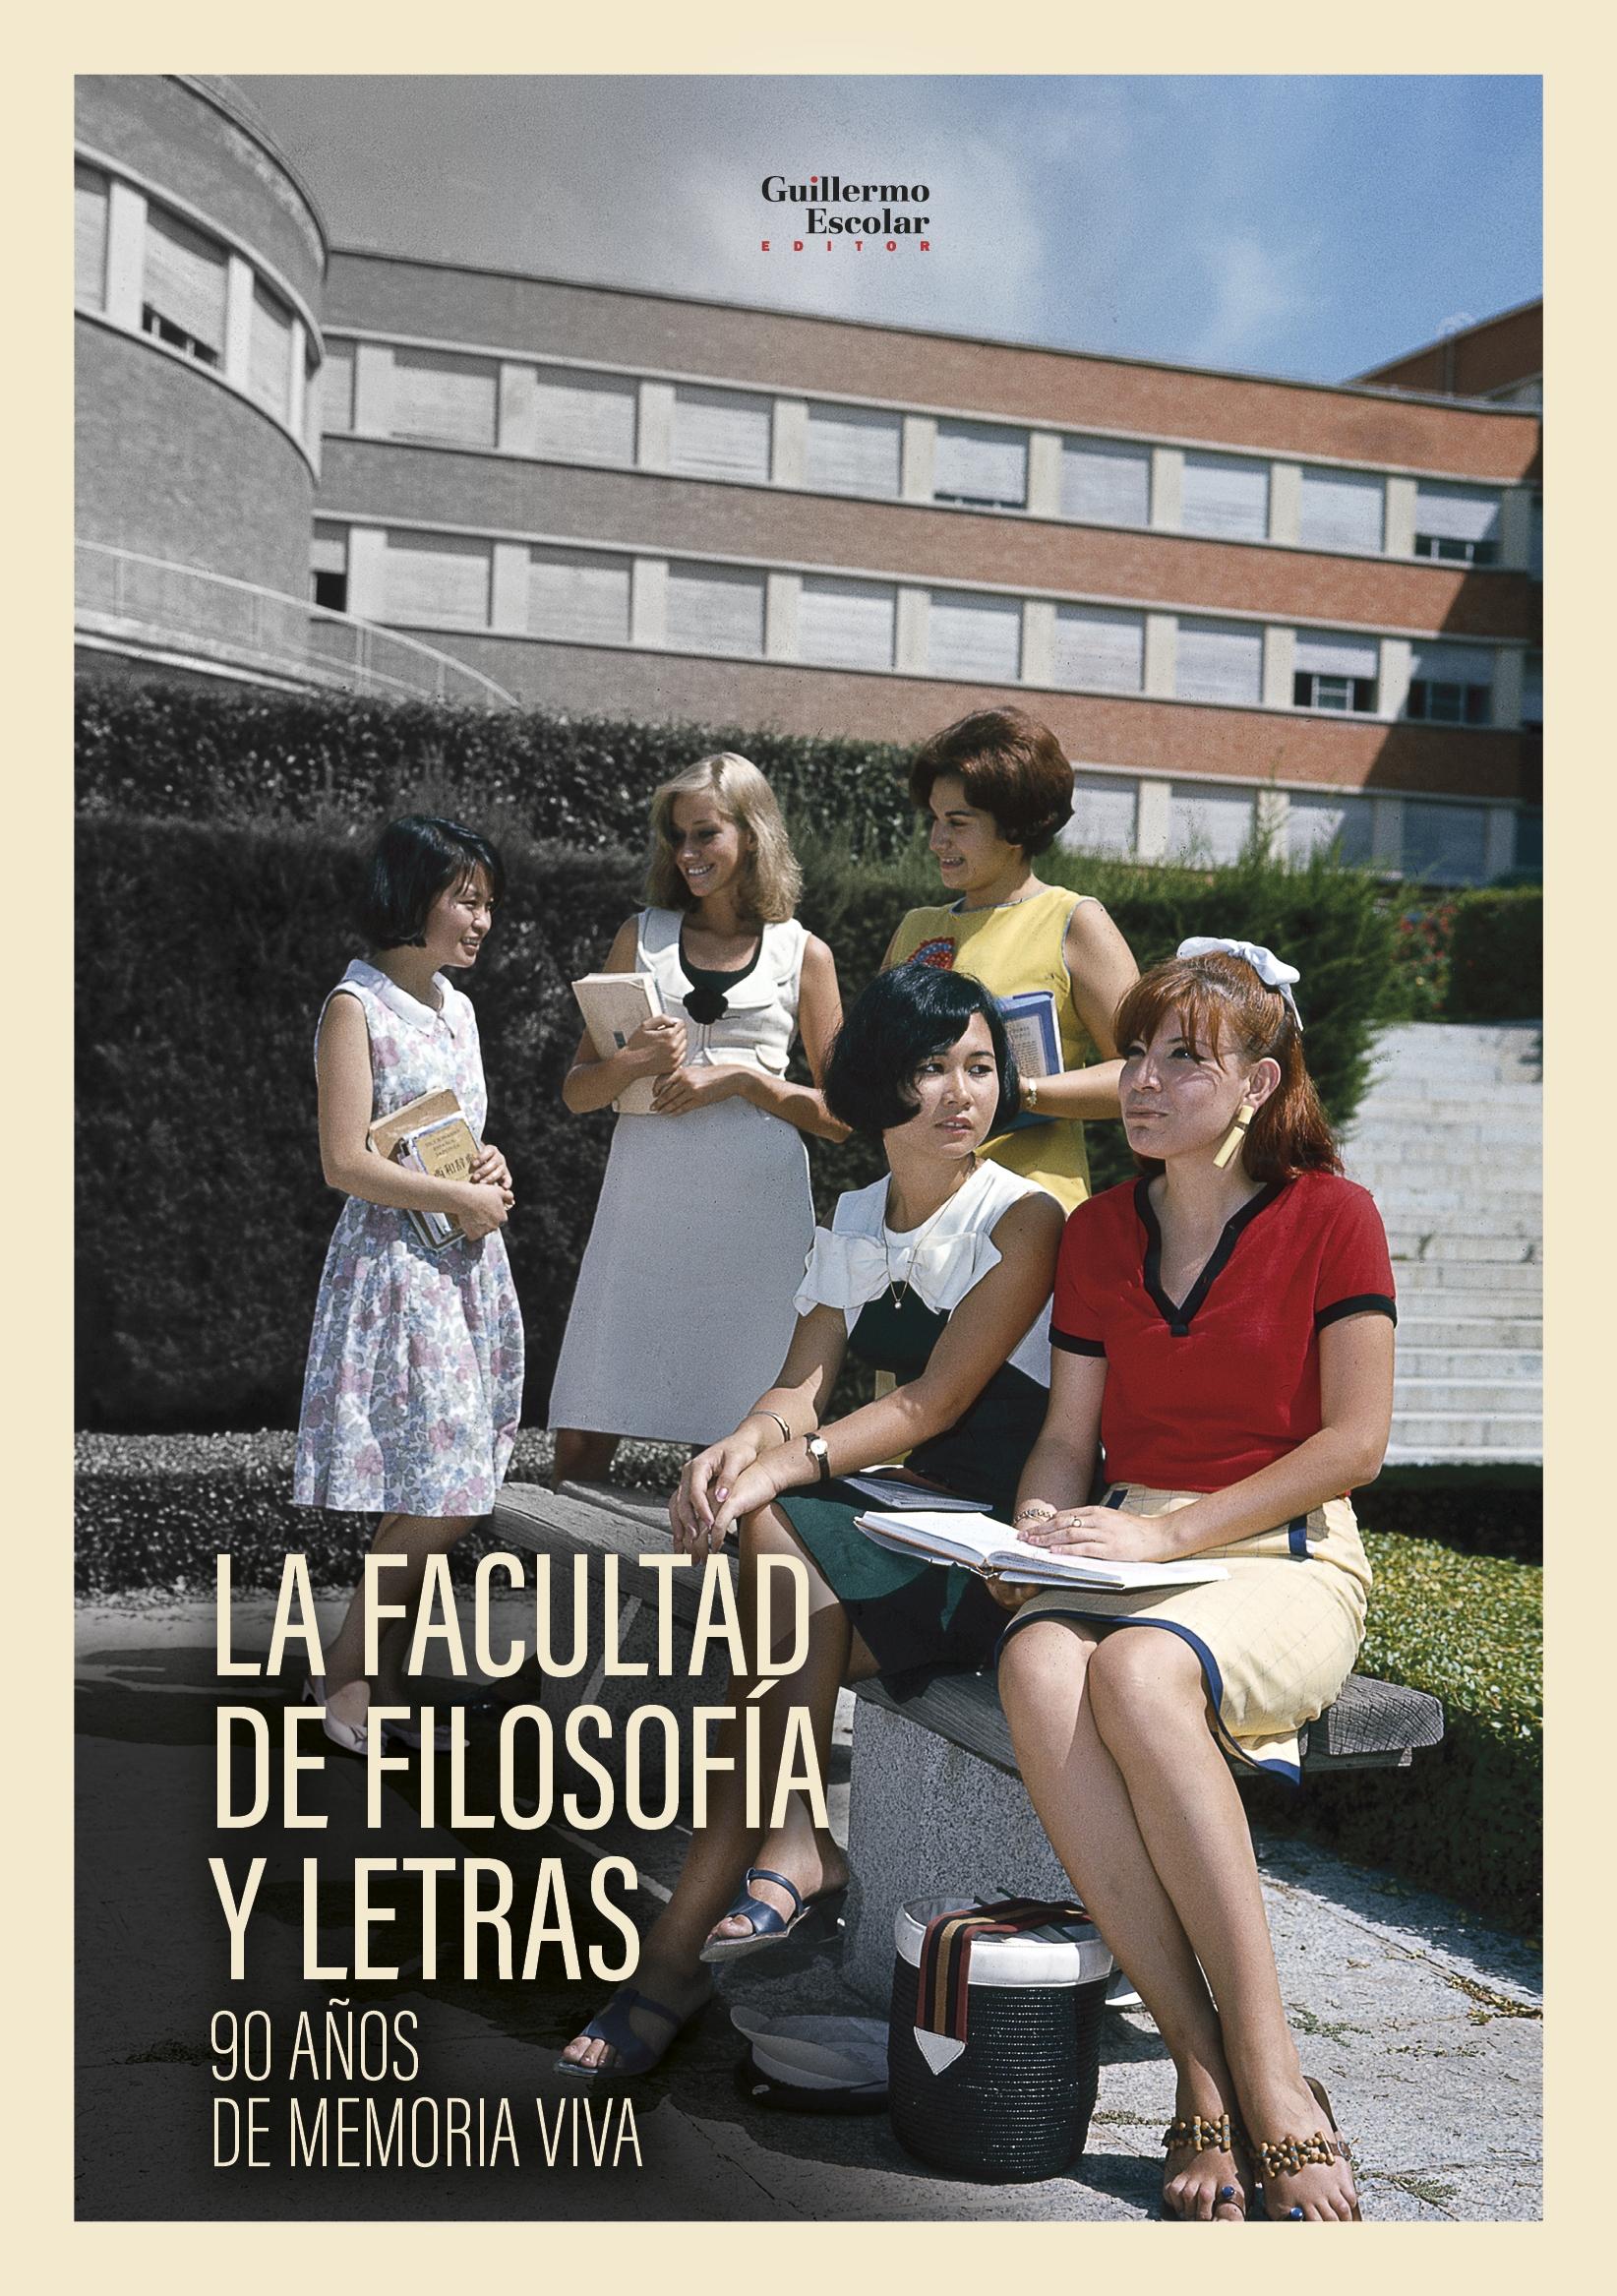 La Facultad de Filosofía y Letras "90 Años de Moria Viva ". 